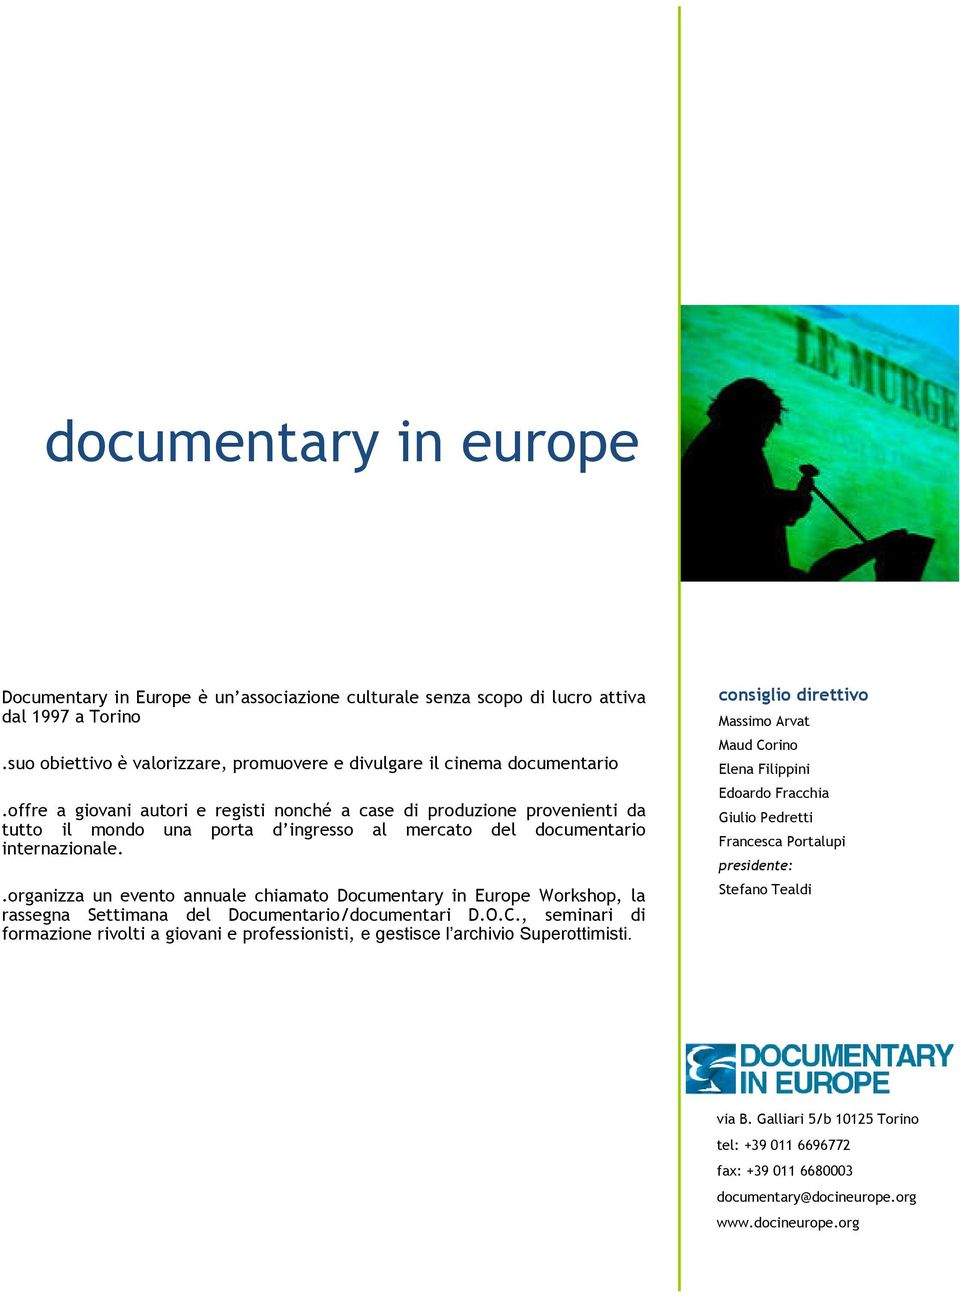 .organizza un evento annuale chiamato Documentary in Europe Workshop, la rassegna Settimana del Documentario/documentari D.O.C.